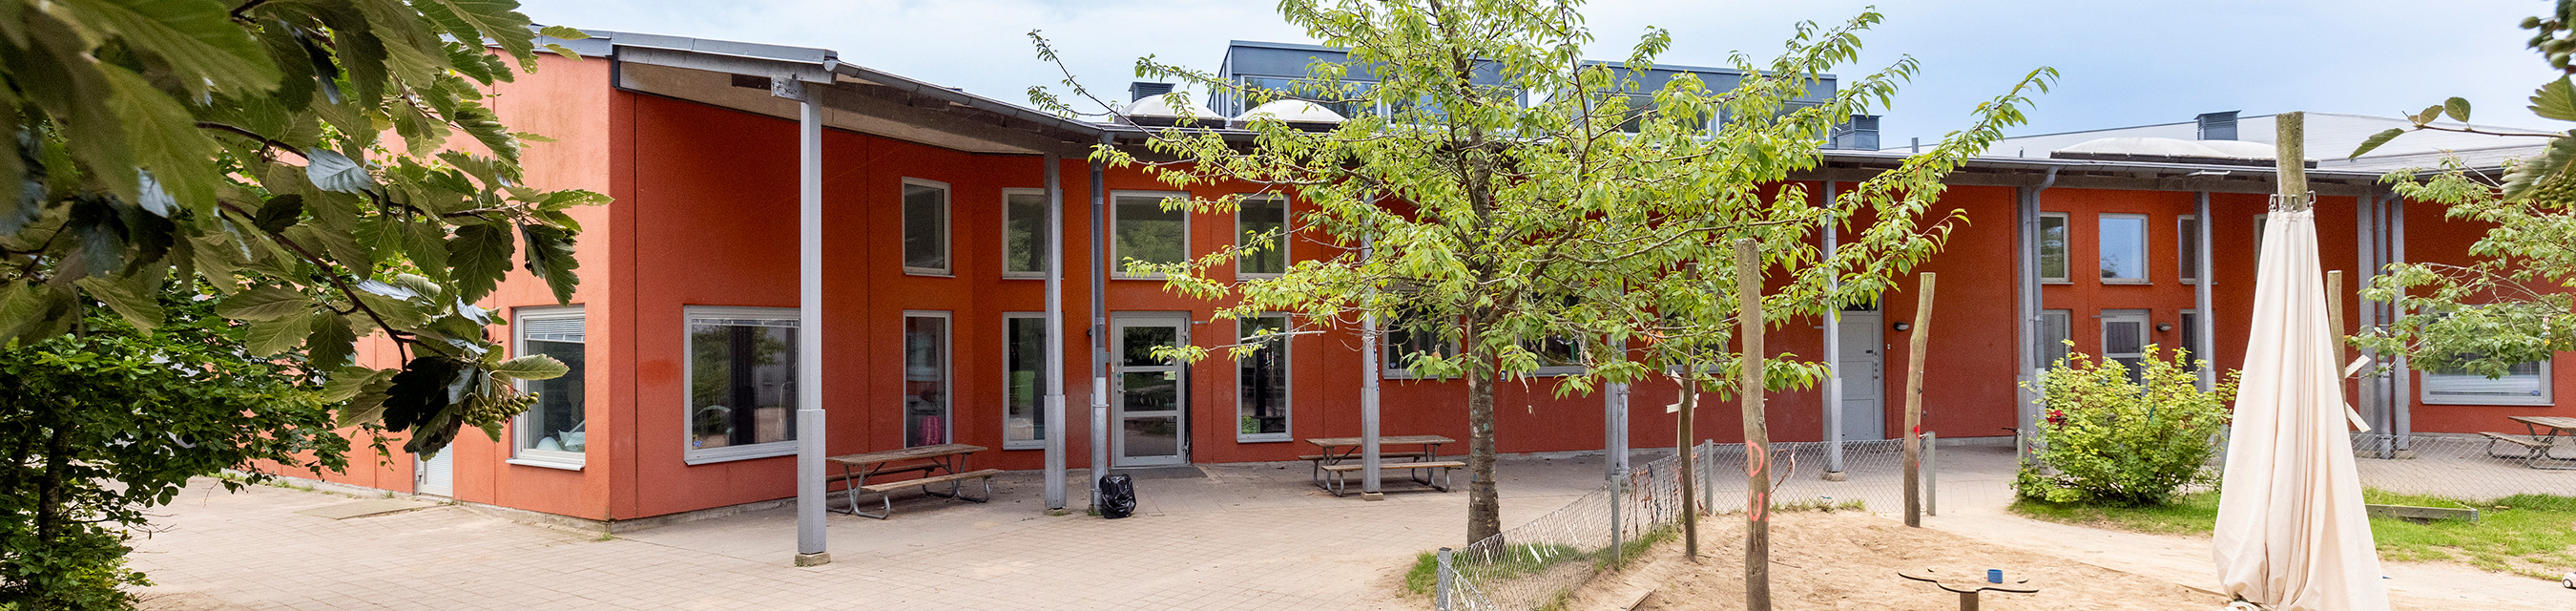 Rubinens förskola är byggd i två plan och har fem avdelningar. 